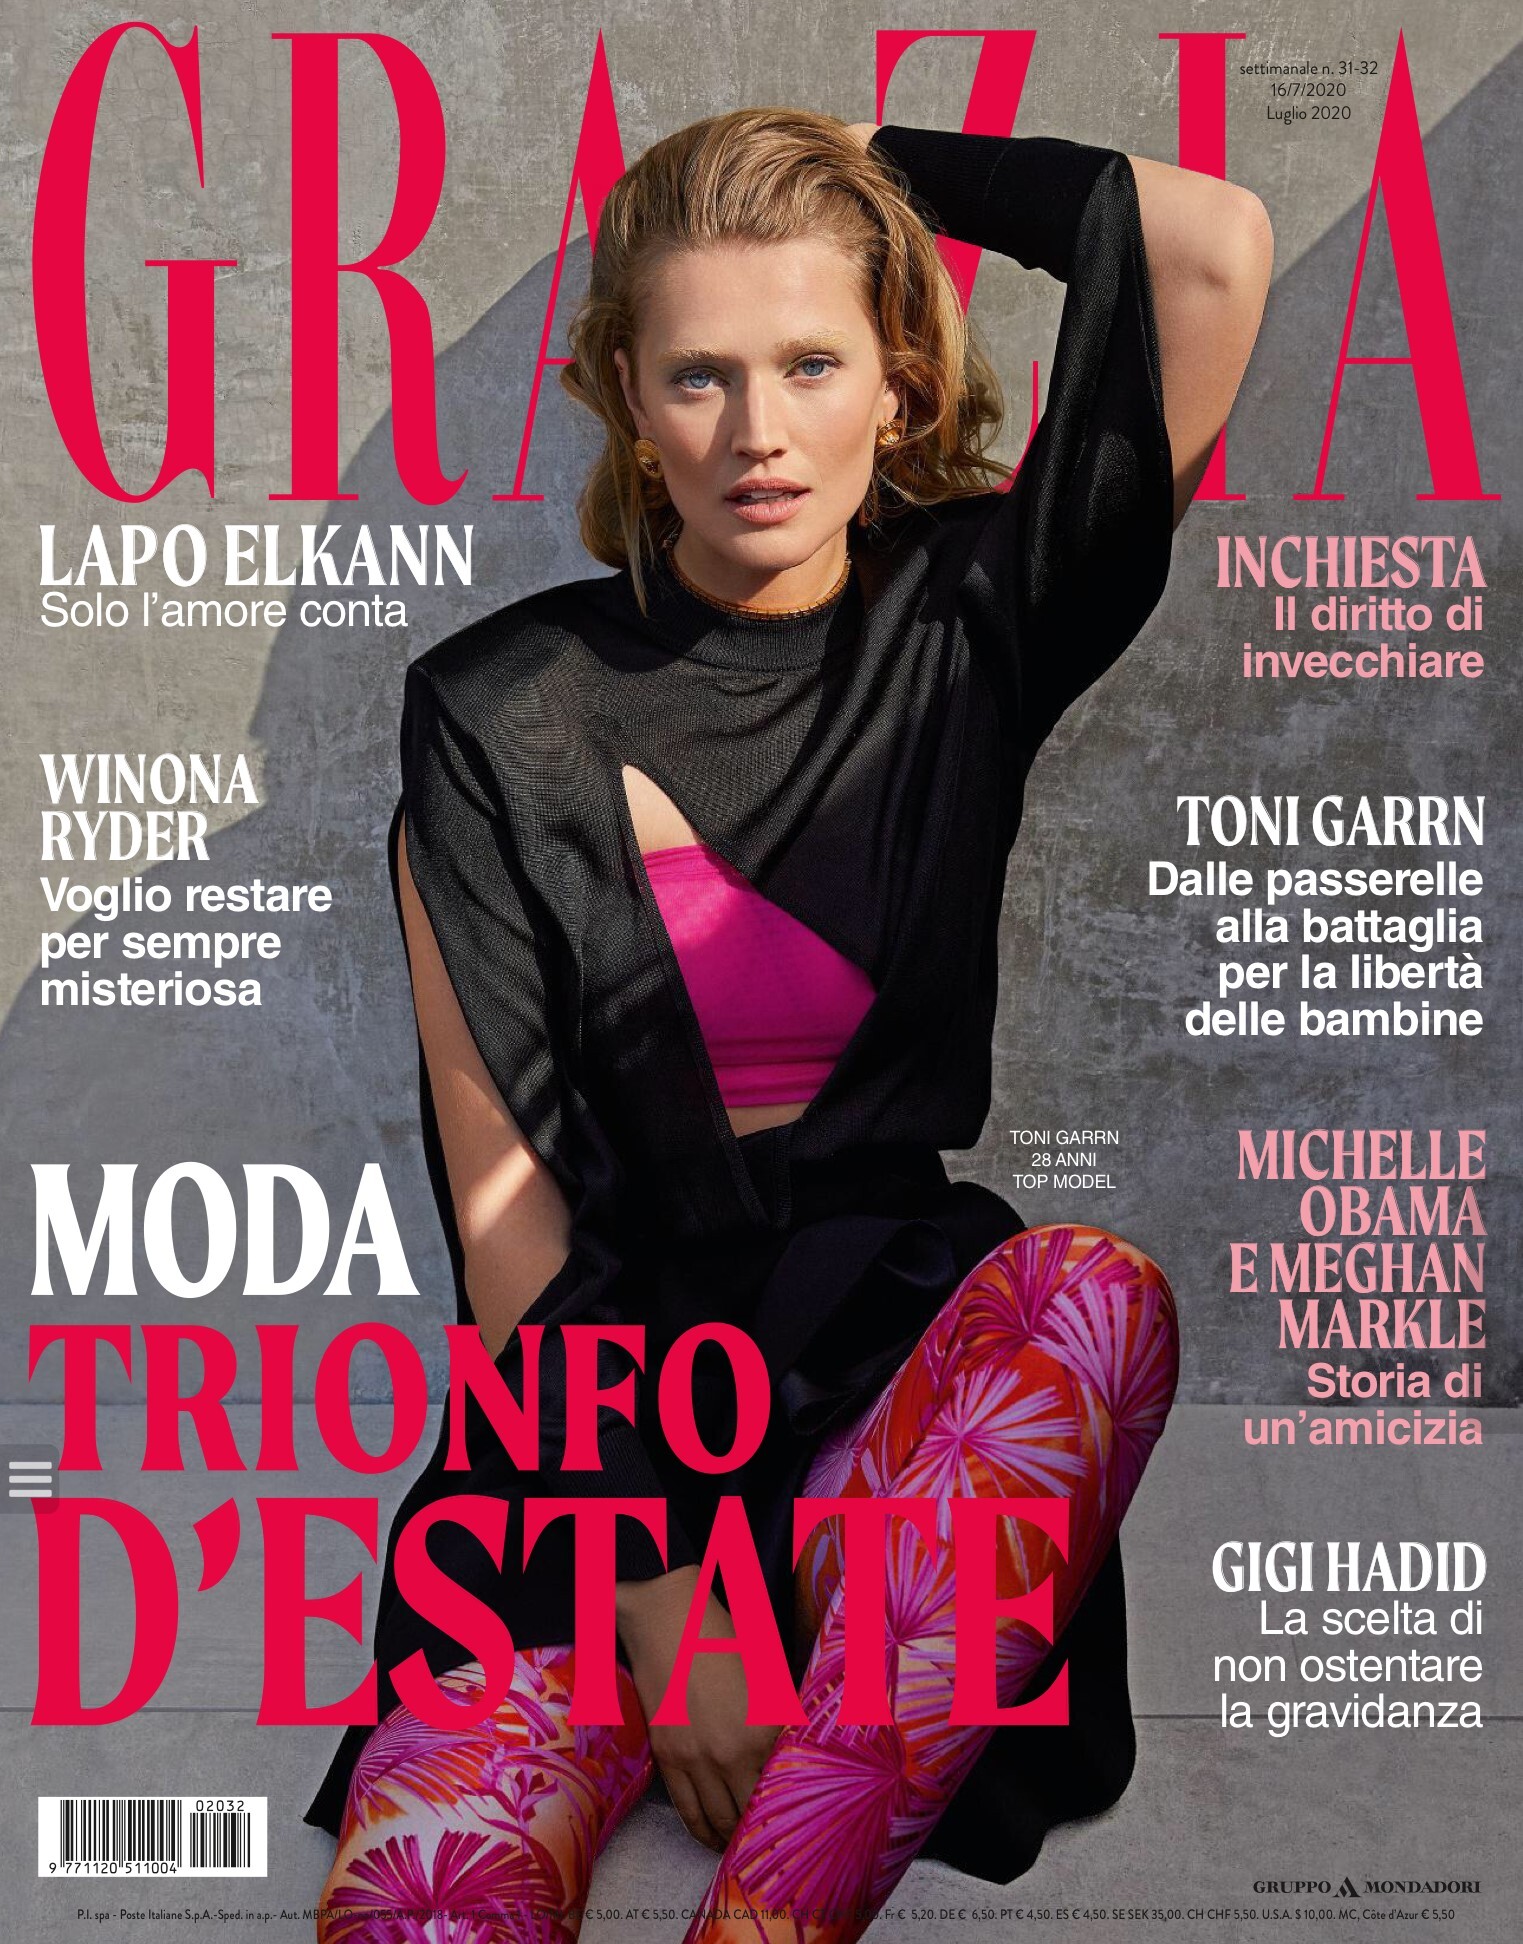 Toni Garrn - Page 677 - Female Fashion Models - Bellazon